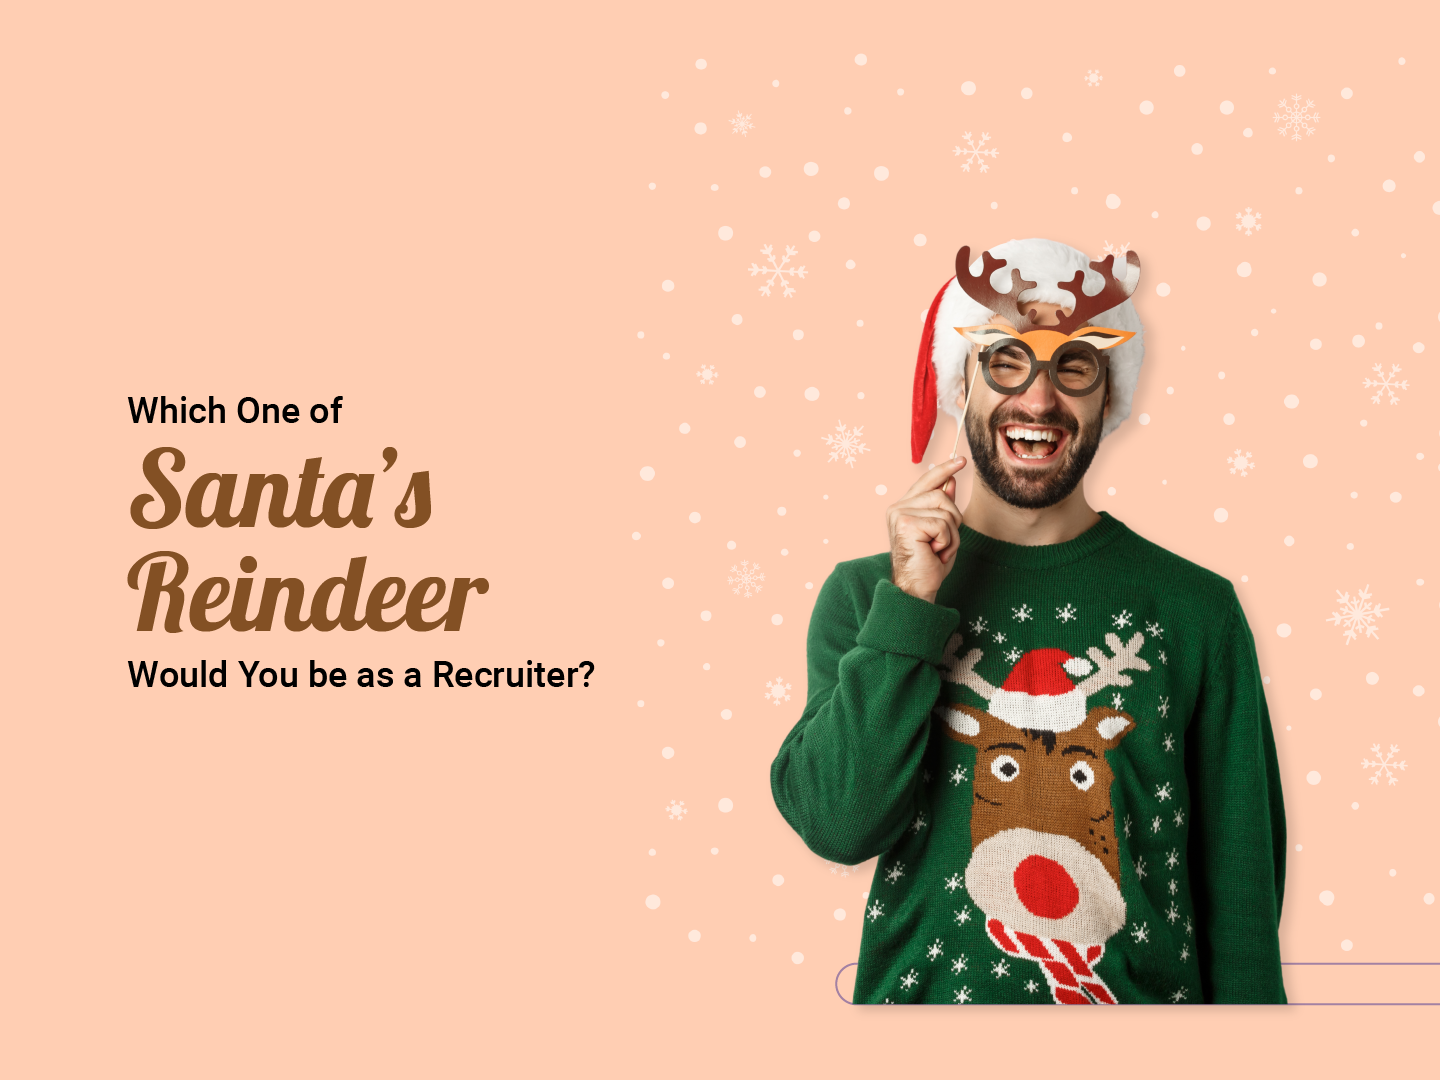 Santa's Reindeer as Recruiters